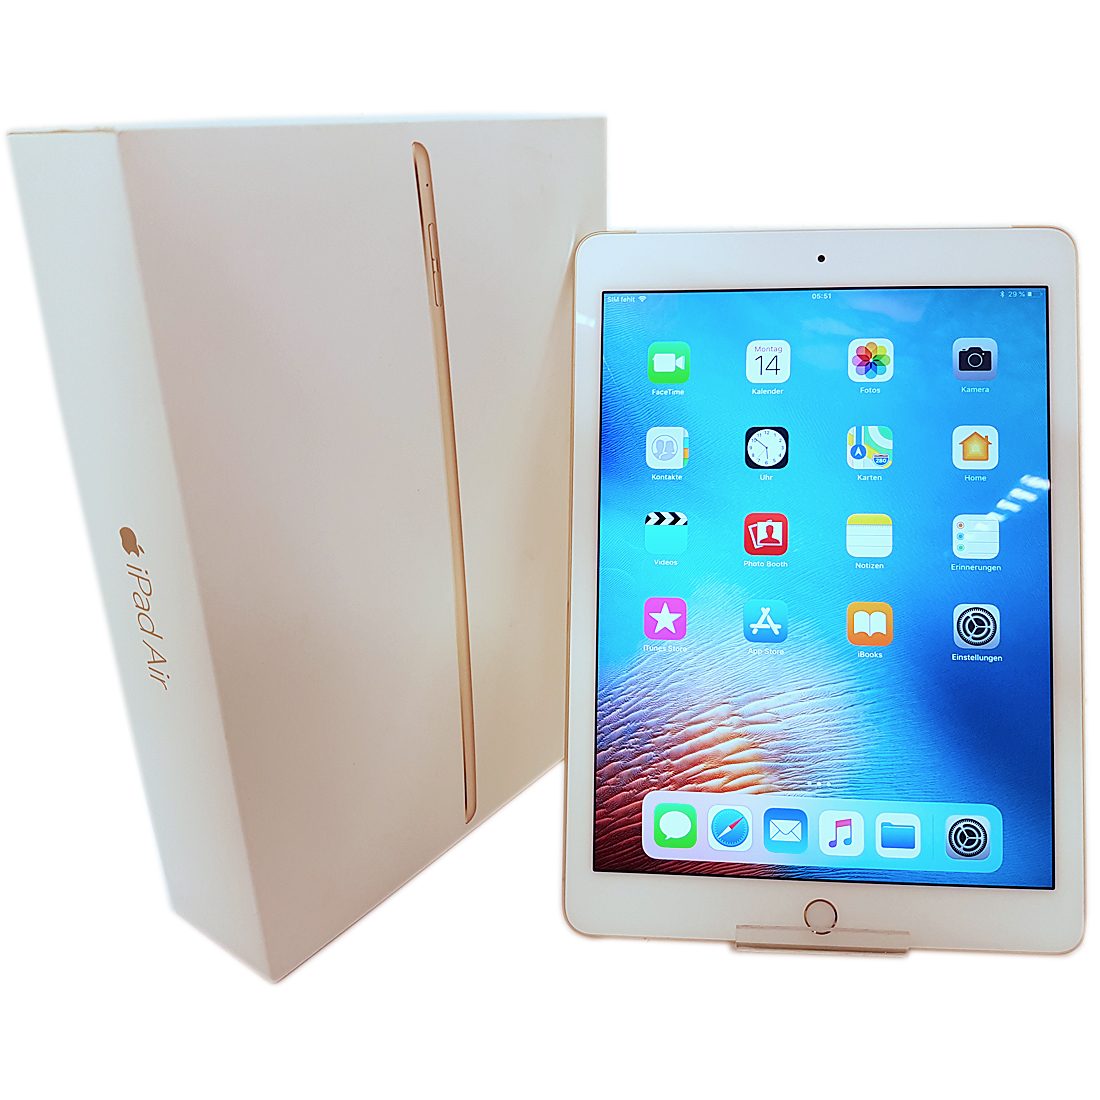 Apple iPad  Air  2  Gold 128Gb Wi Fi Cellular  A1567 eBay